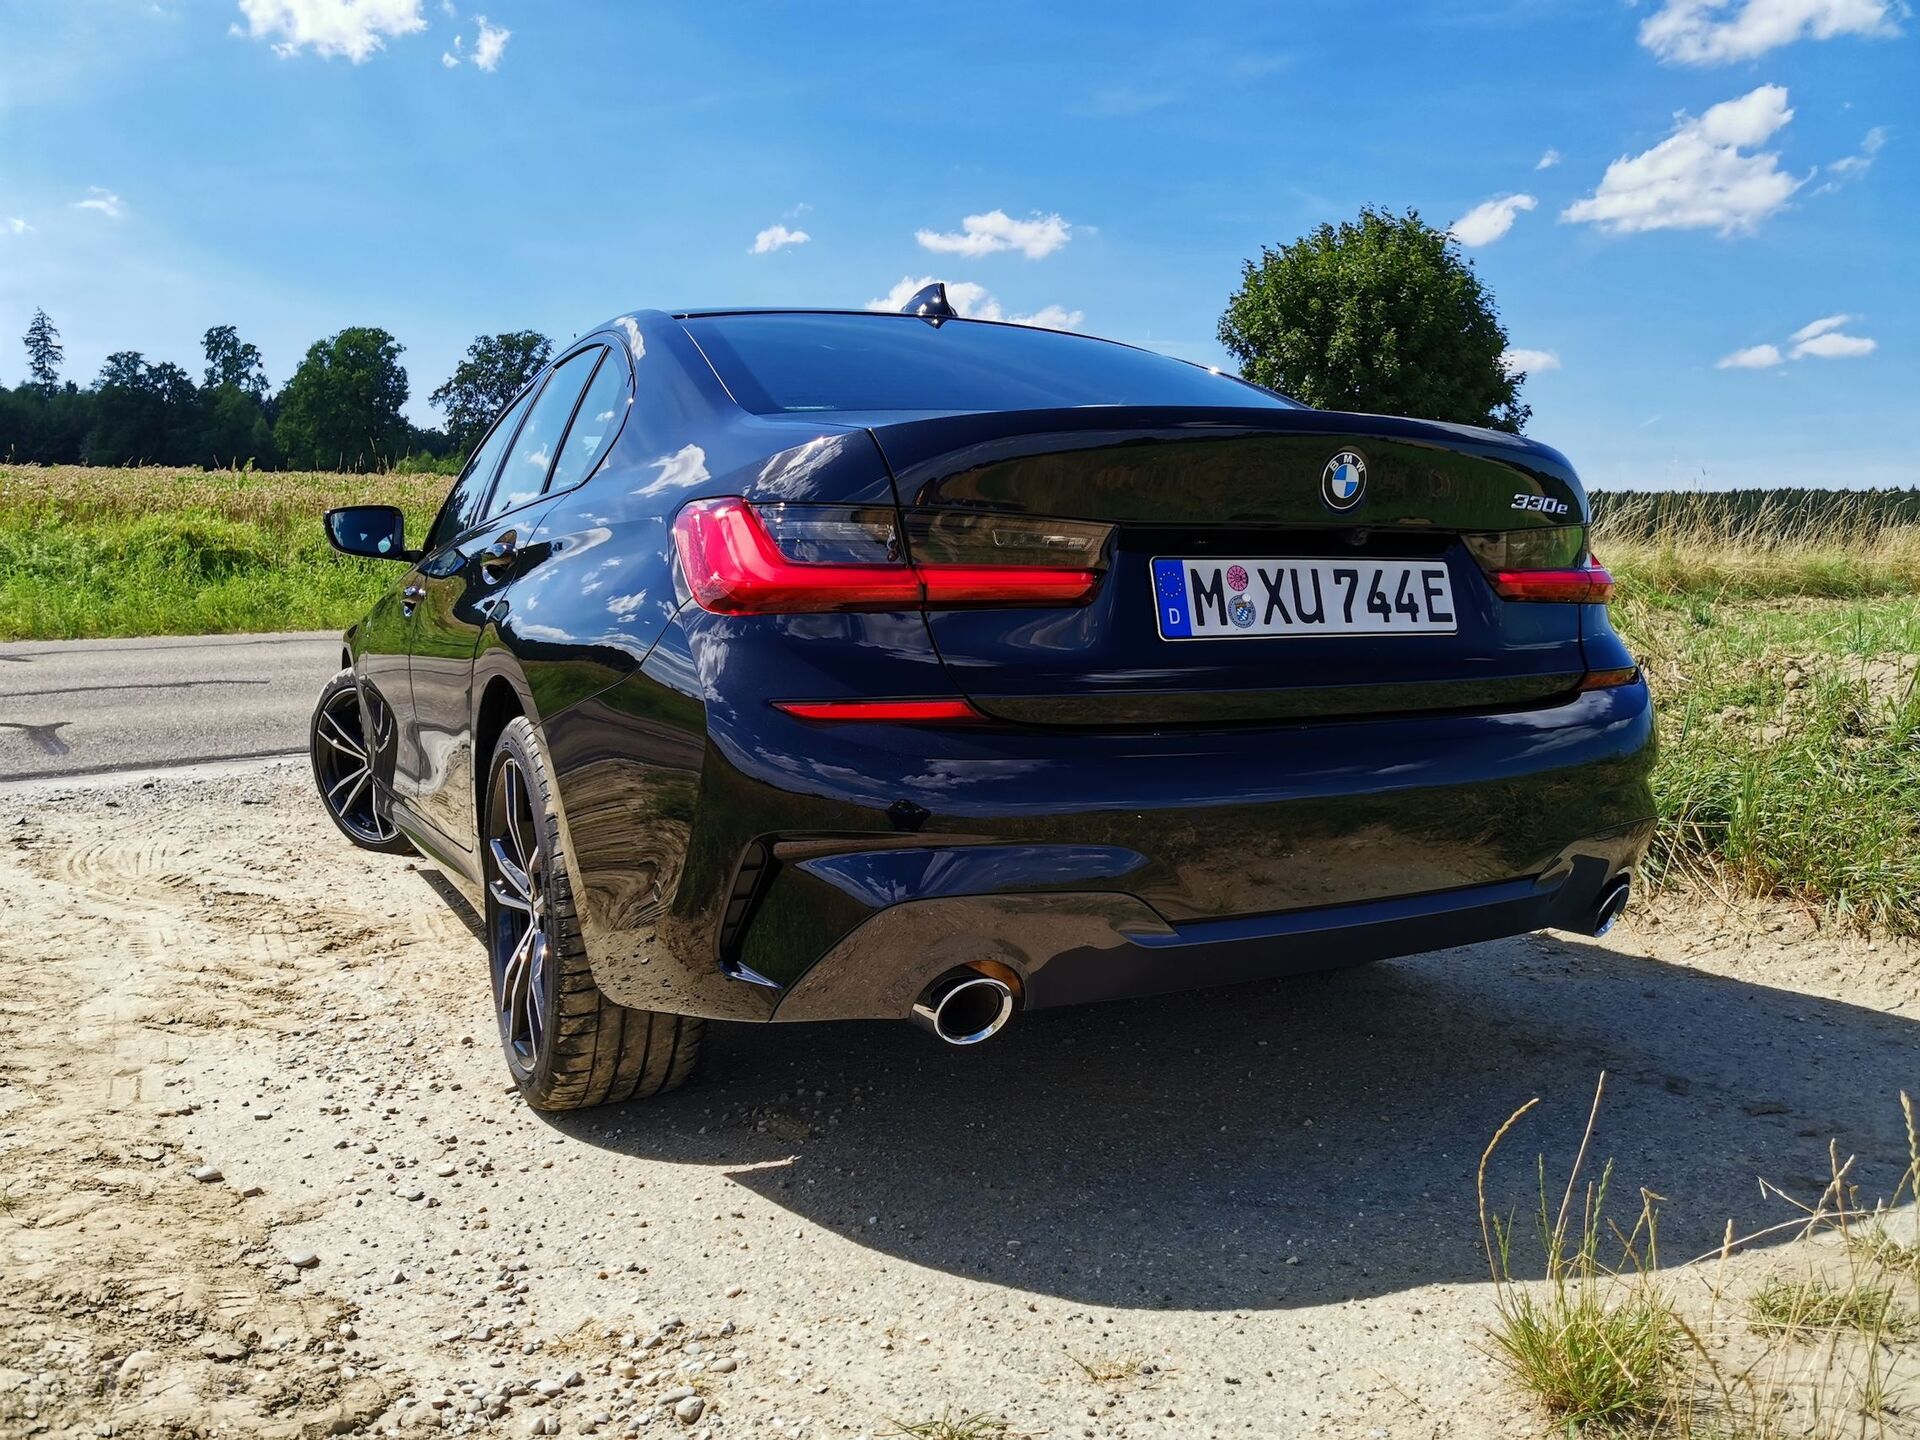 BMW 330e (2019)